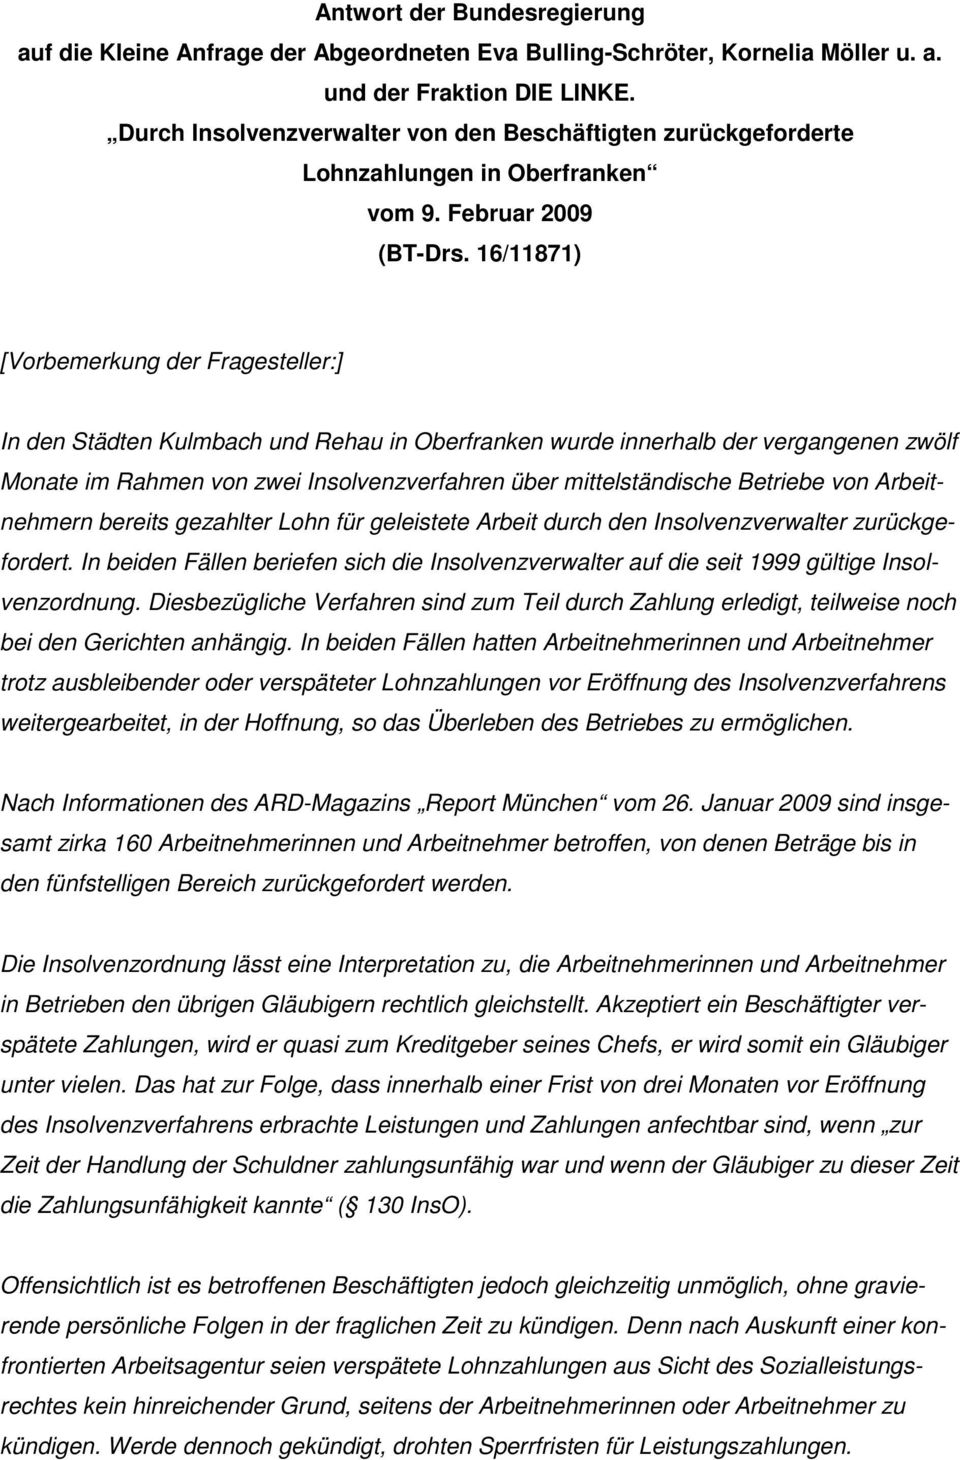 16/11871) [Vorbemerkung der Fragesteller:] In den Städten Kulmbach und Rehau in Oberfranken wurde innerhalb der vergangenen zwölf Monate im Rahmen von zwei Insolvenzverfahren über mittelständische